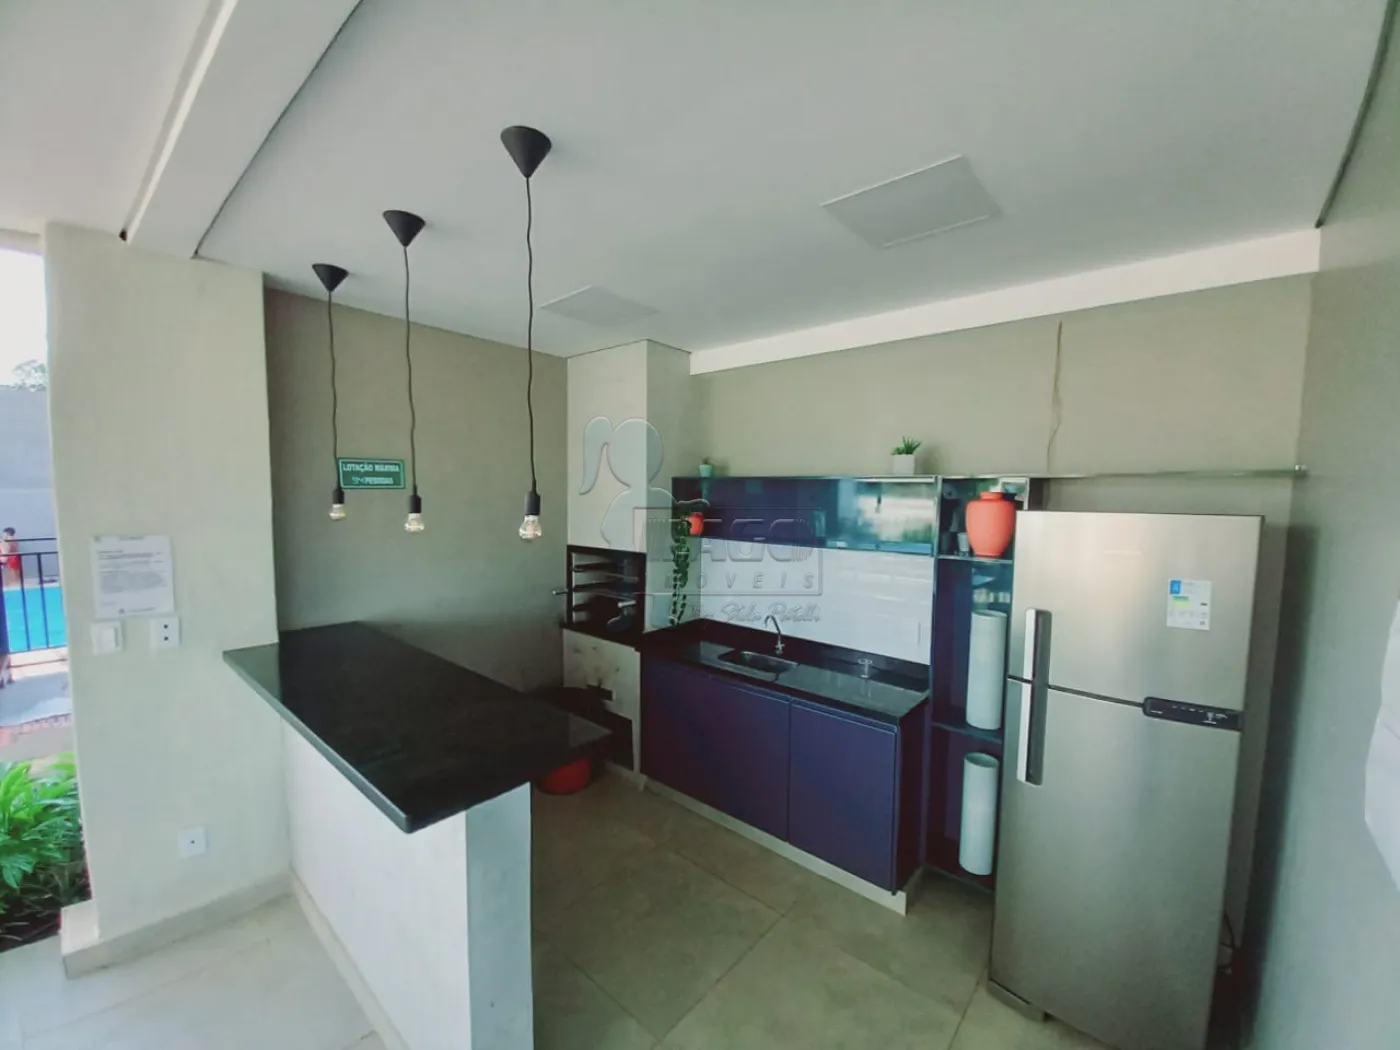 Alugar Apartamentos / Padrão em Bonfim Paulista R$ 1.000,00 - Foto 2